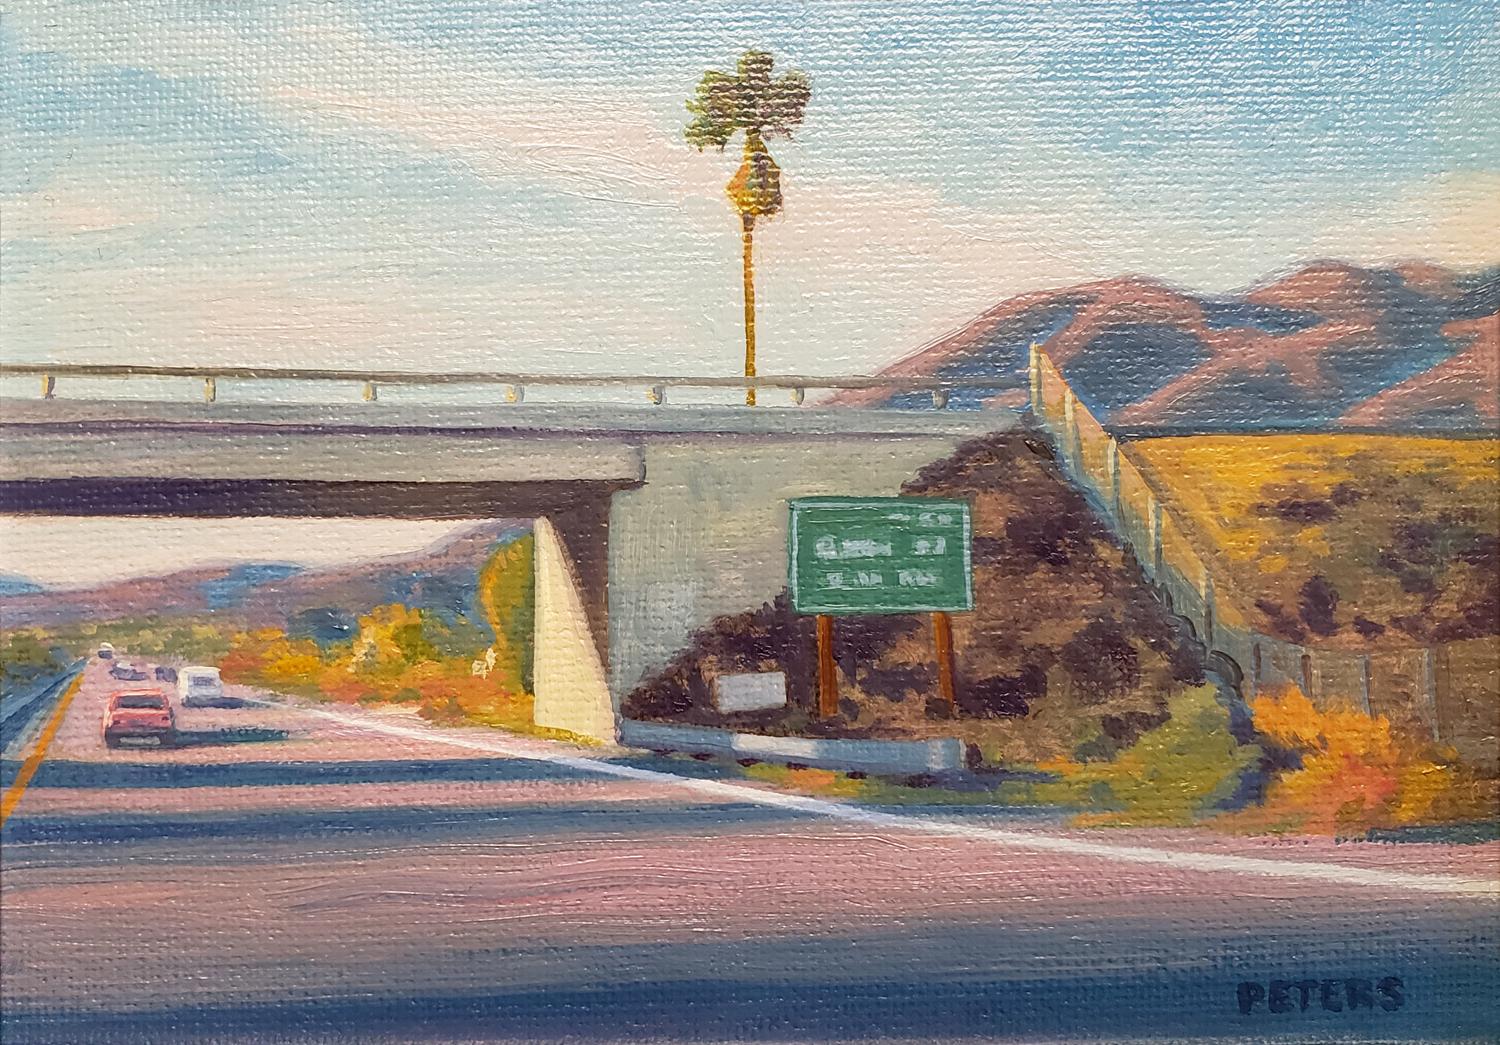 Palm ( palmier de Freeway) - Painting de Tony Peters